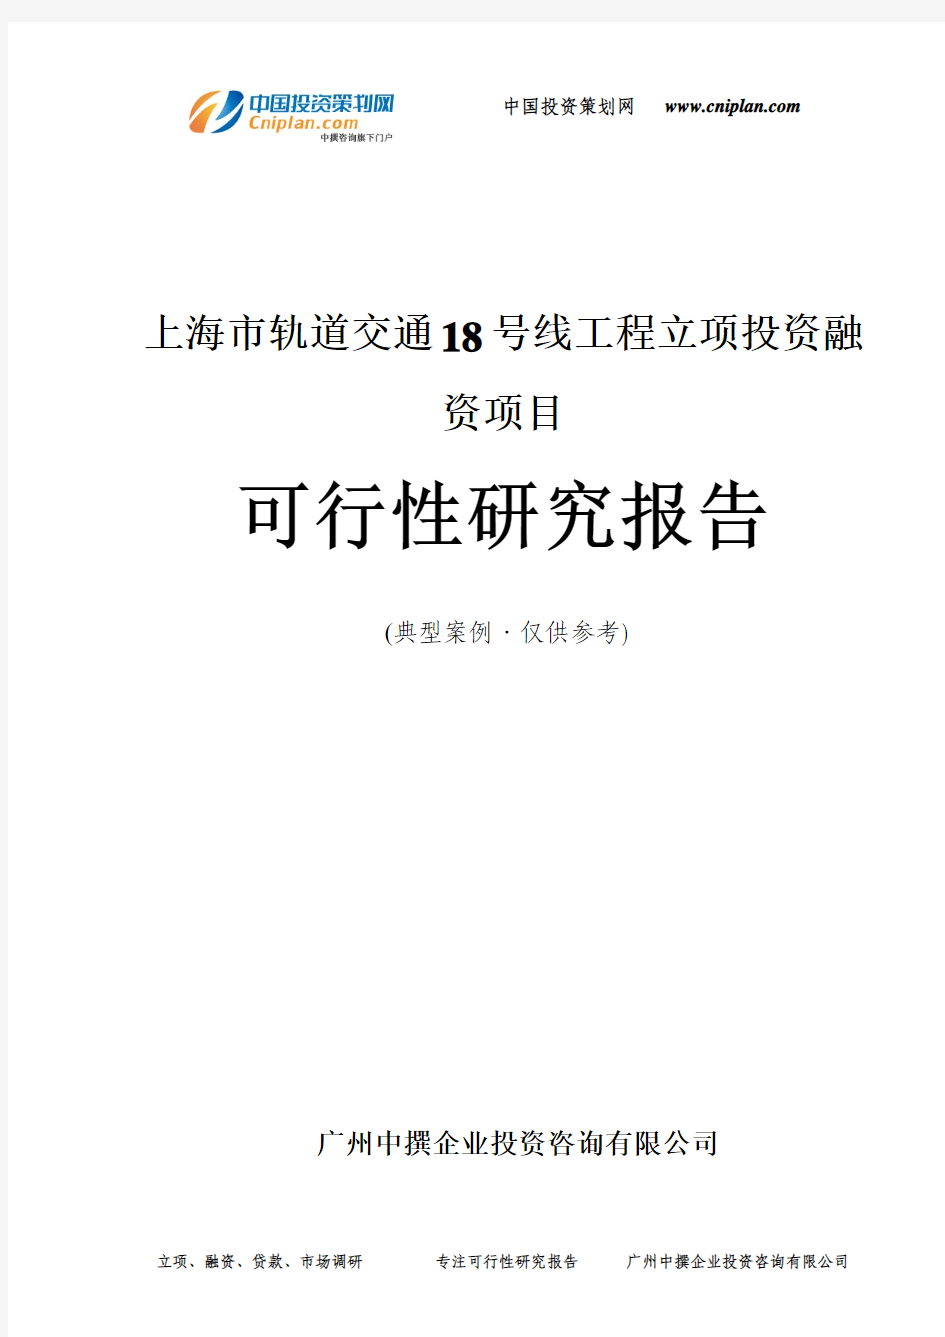 上海市轨道交通18号线工程融资投资立项项目可行性研究报告(非常详细)